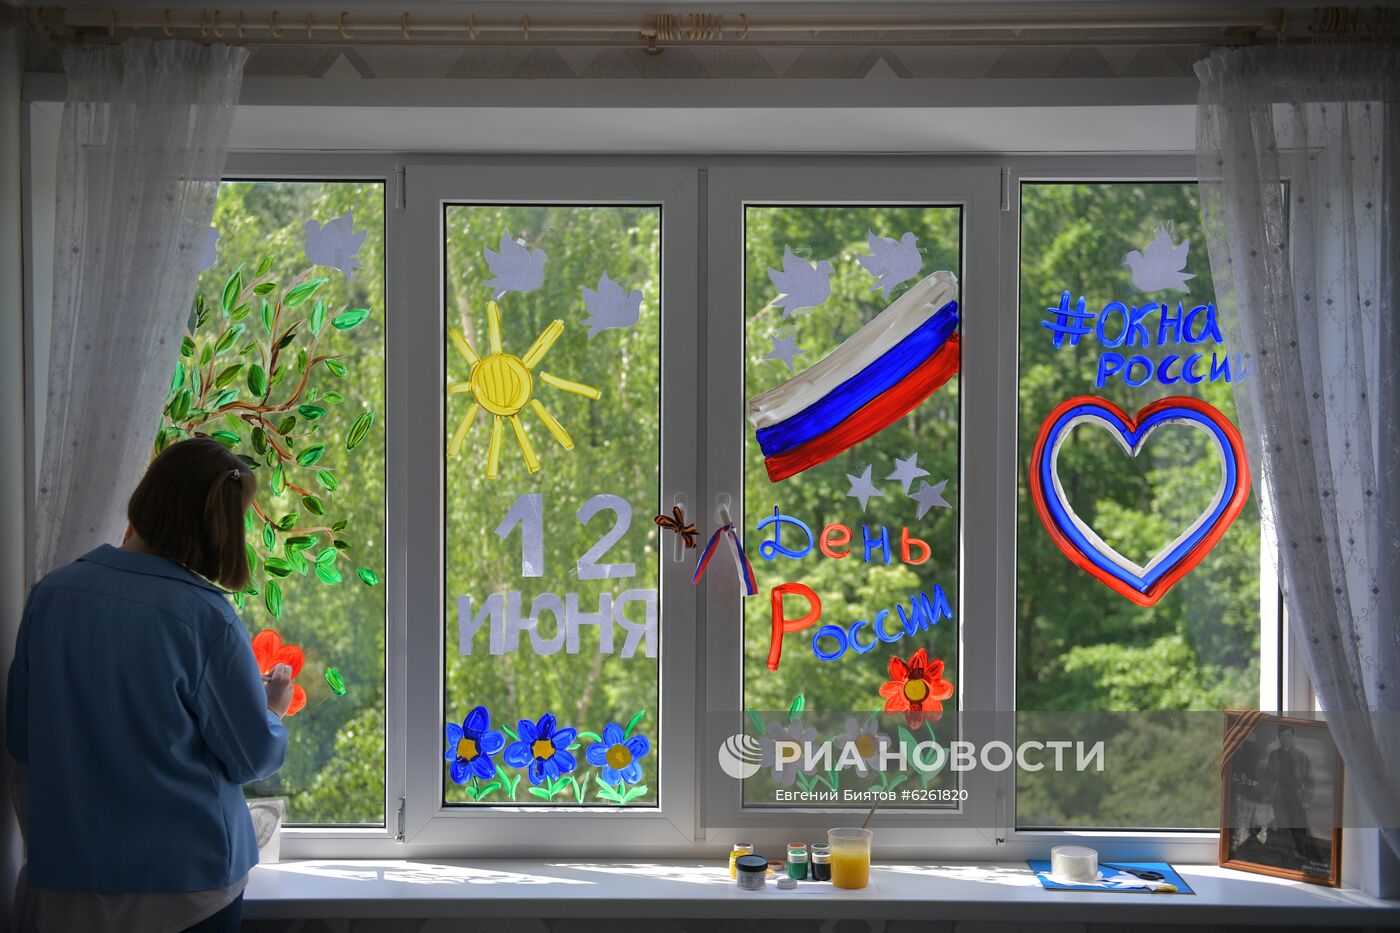 Подготовка к акции "Окна России"